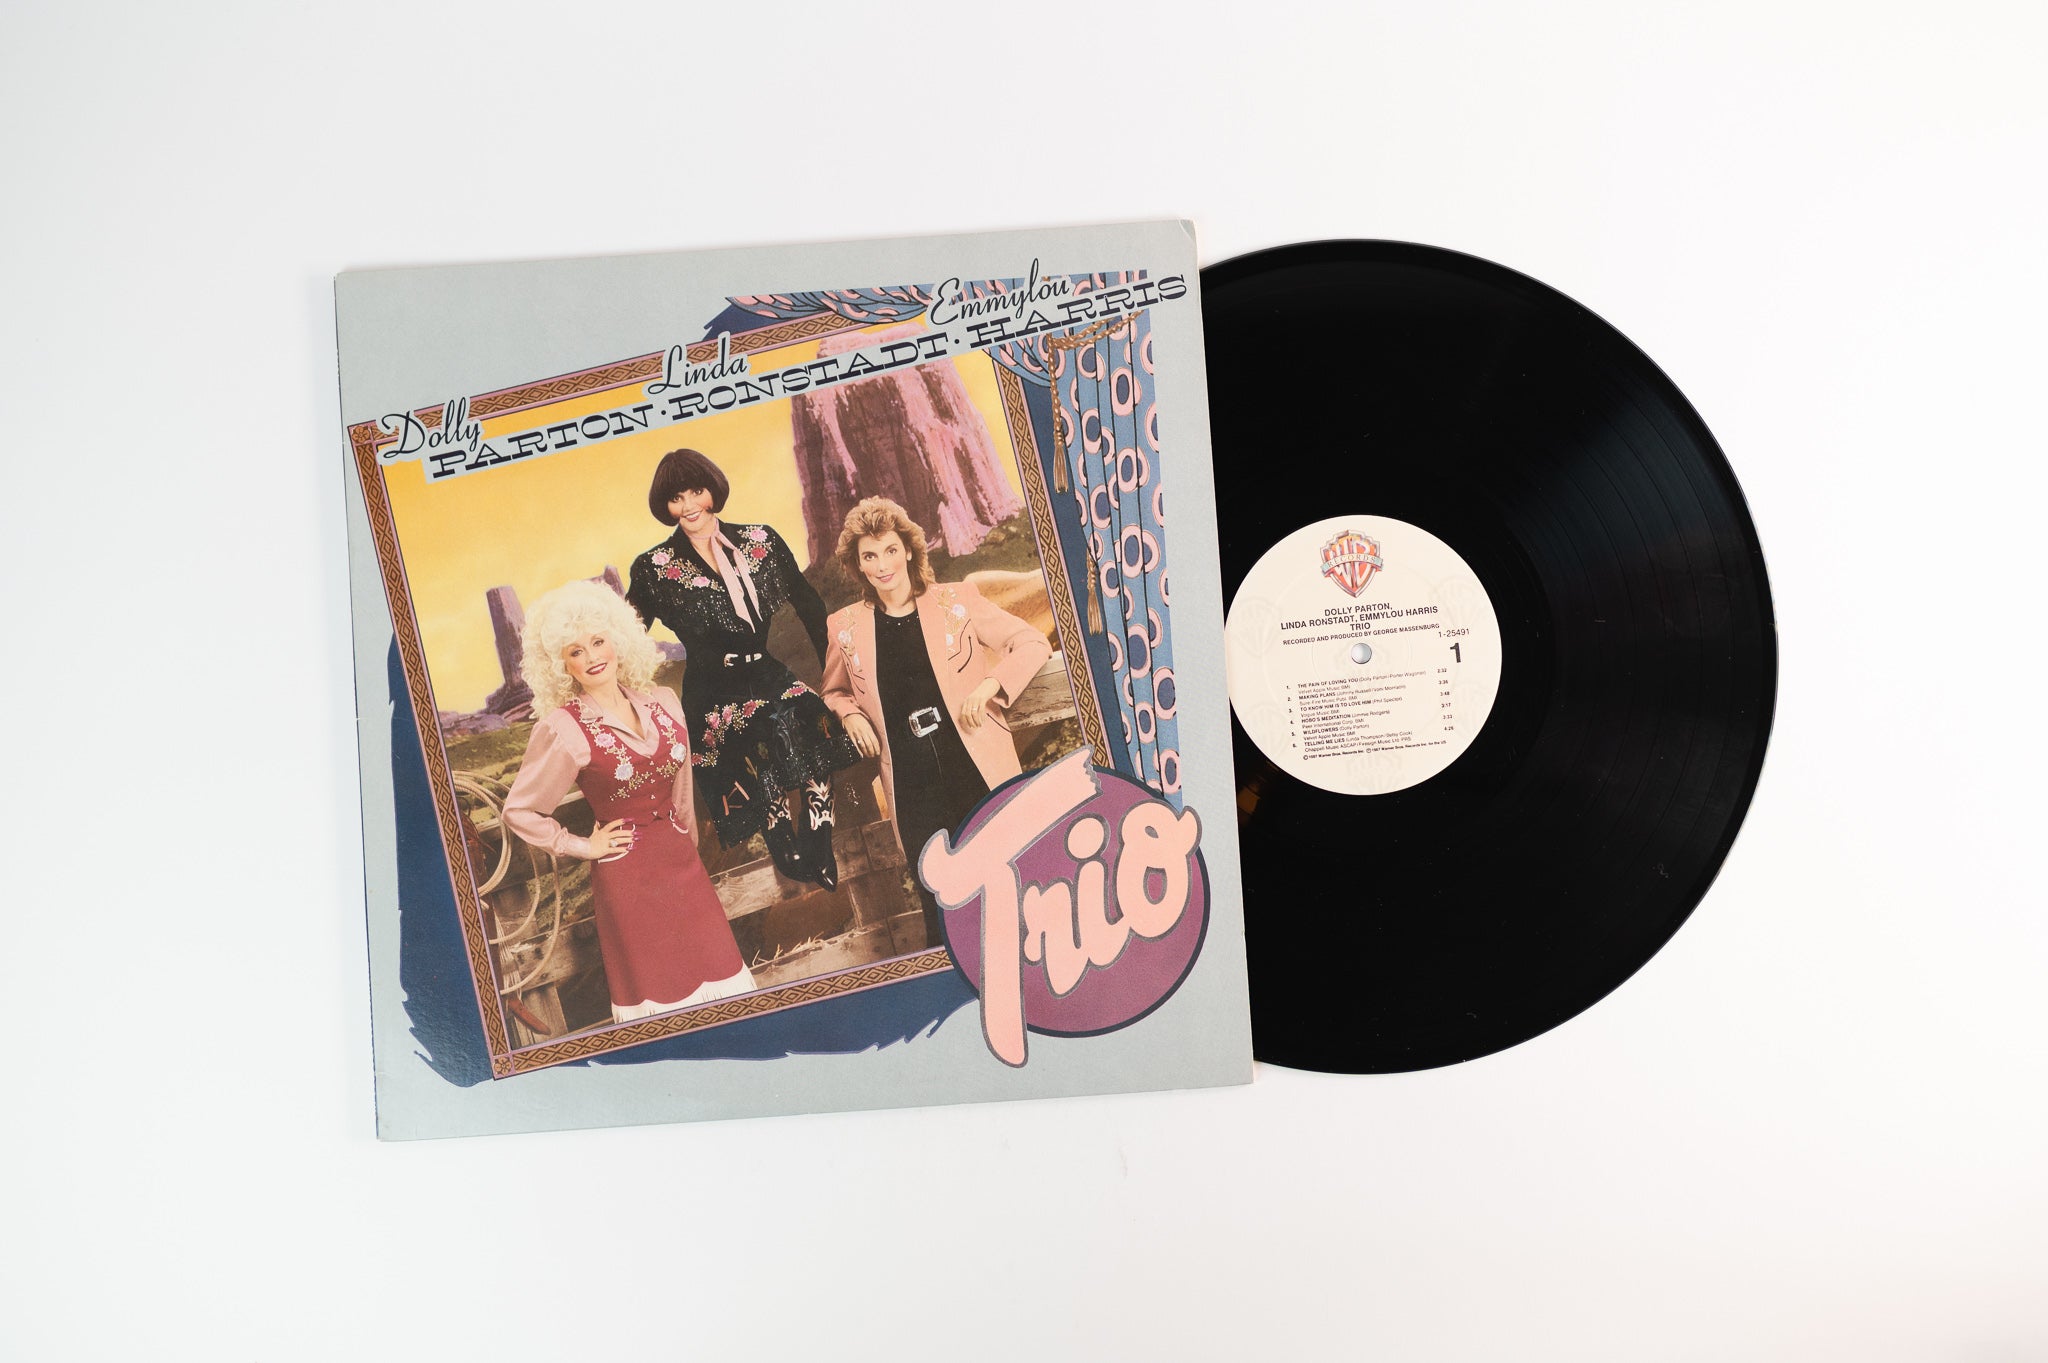 Dolly Parton - Trio on Warner Bros. Records